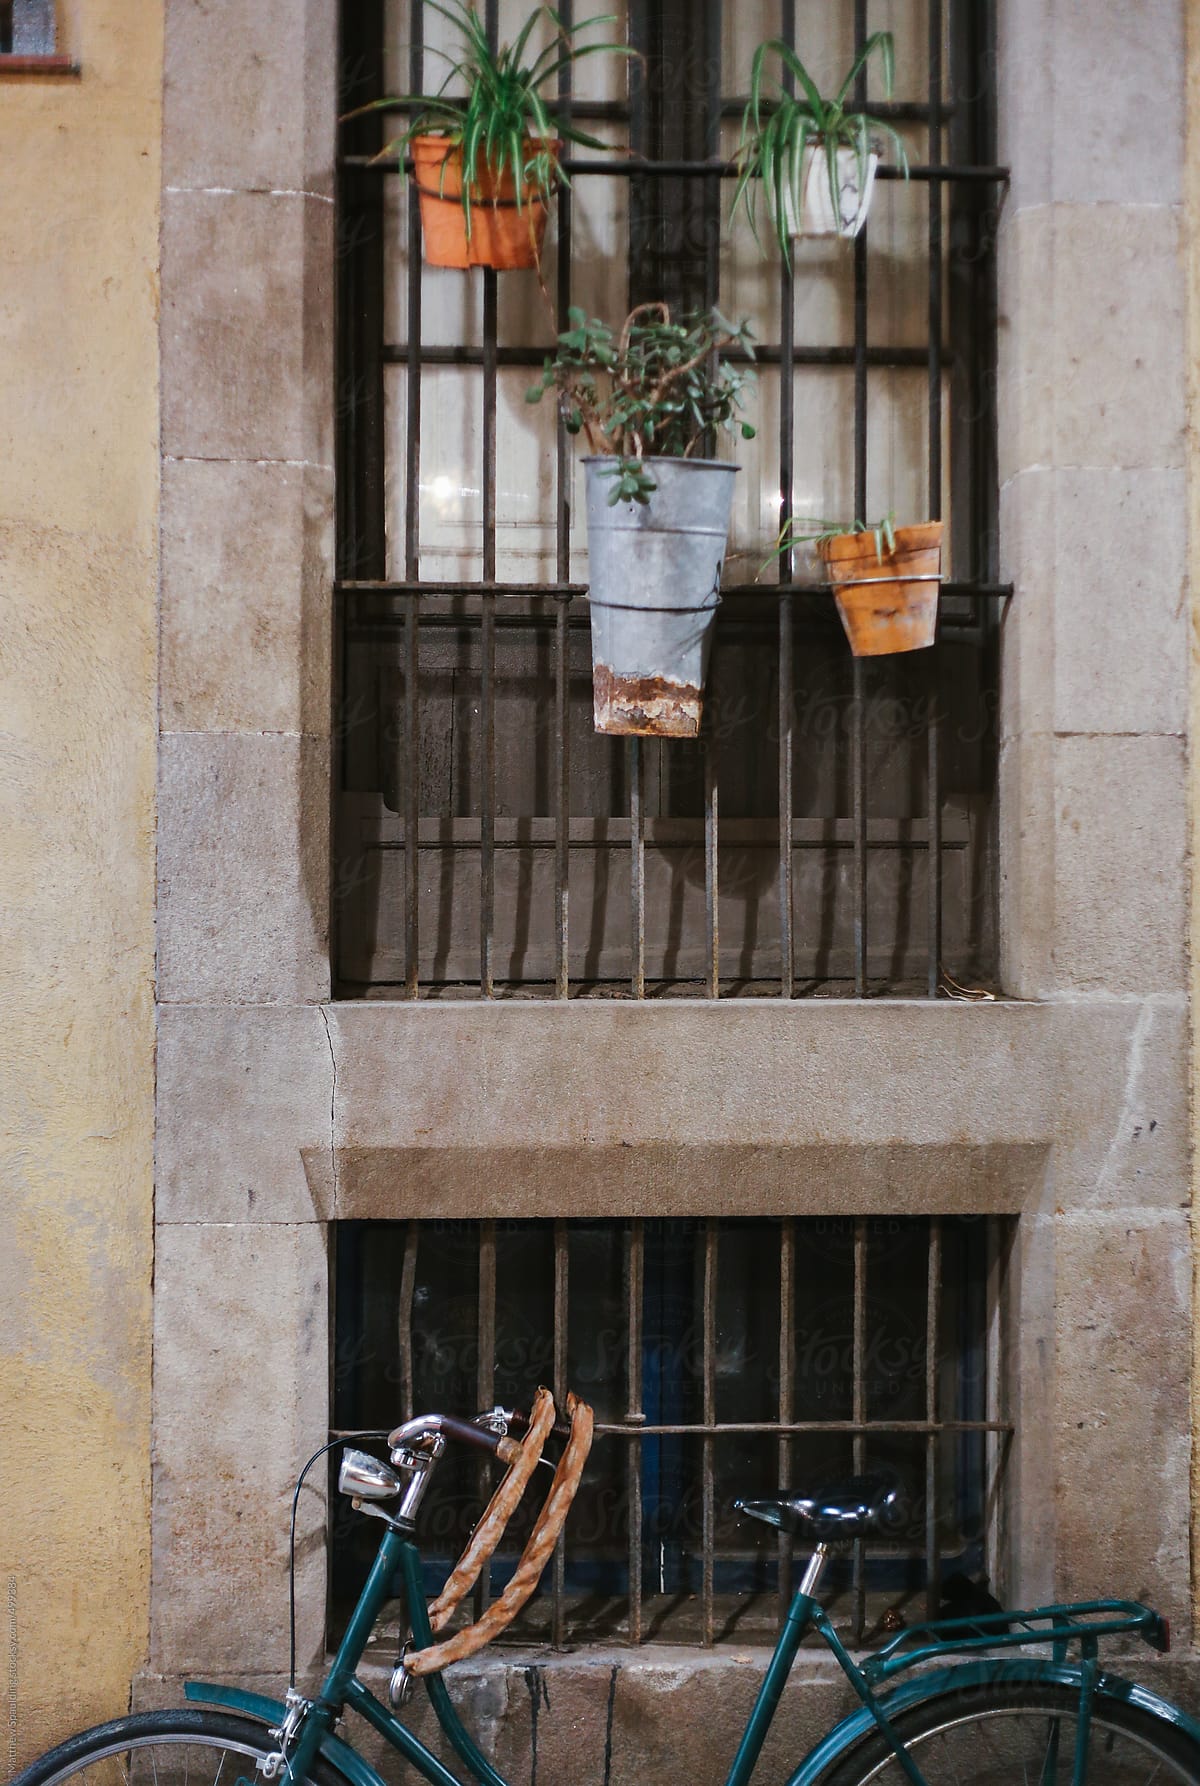 Bike on sidewalk with flower pots hanging on window